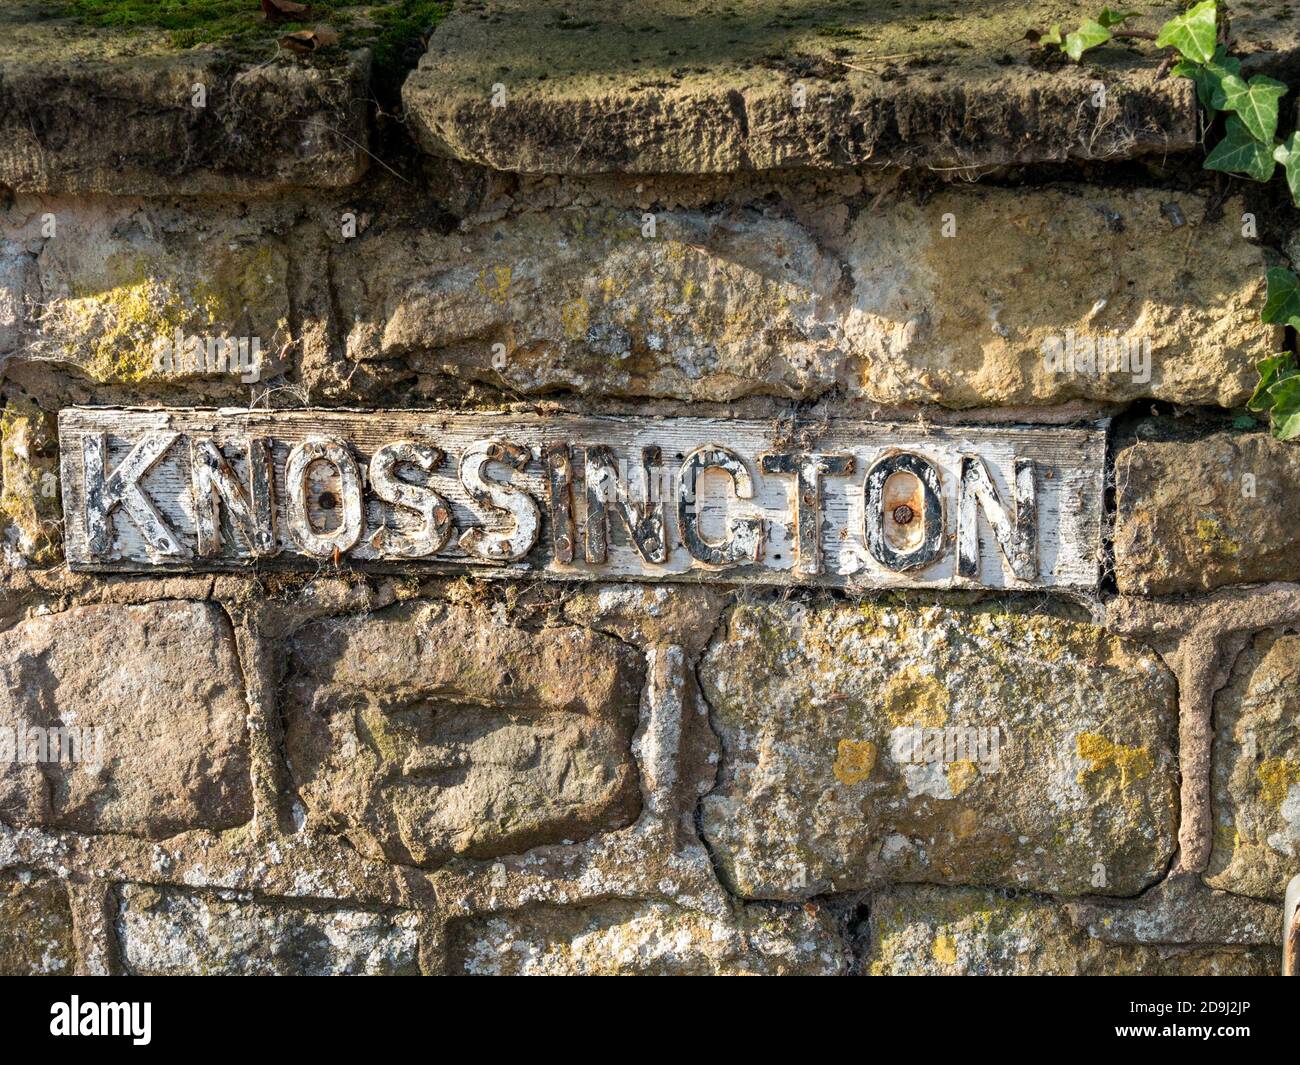 'Knossington' hübsches, altes gusseisernes Schild mit erhabenem geprägtem Schriftzug in alter Steinwand, Knossington, Leicestershire. Stockfoto